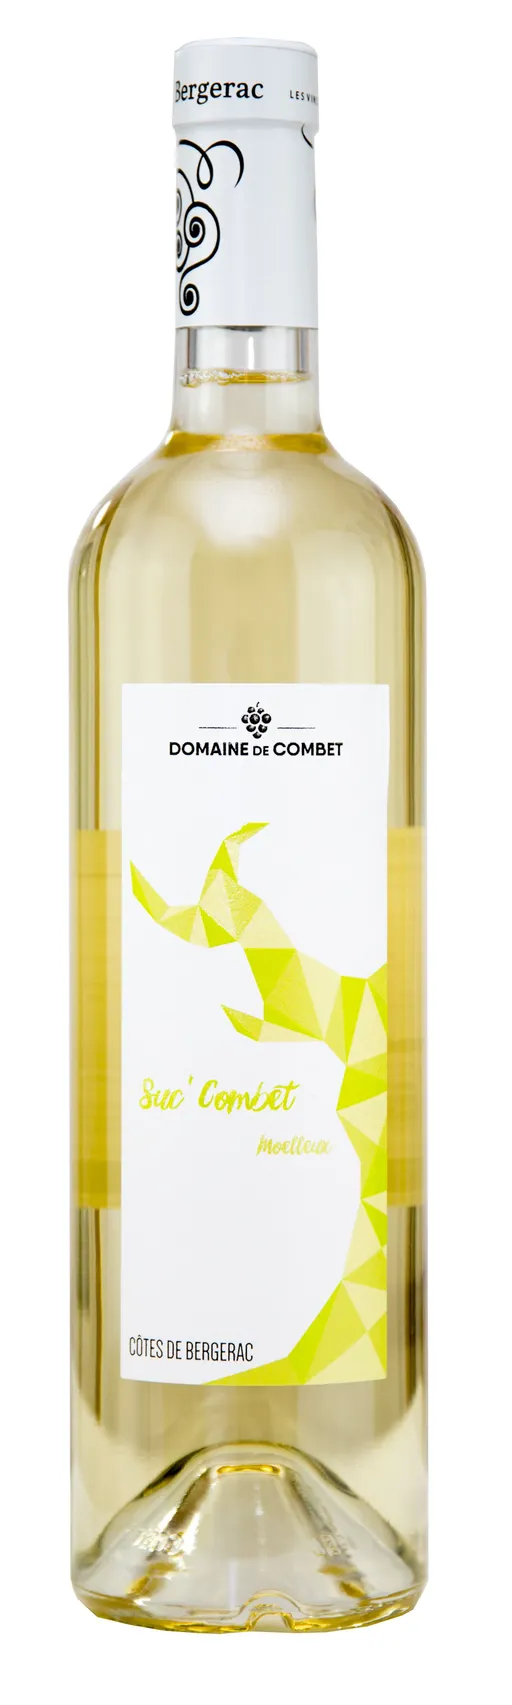 Earl de Combet SUC'COMBET, Blanc, 2021, Côtes de Bergerac. Image de la bouteille